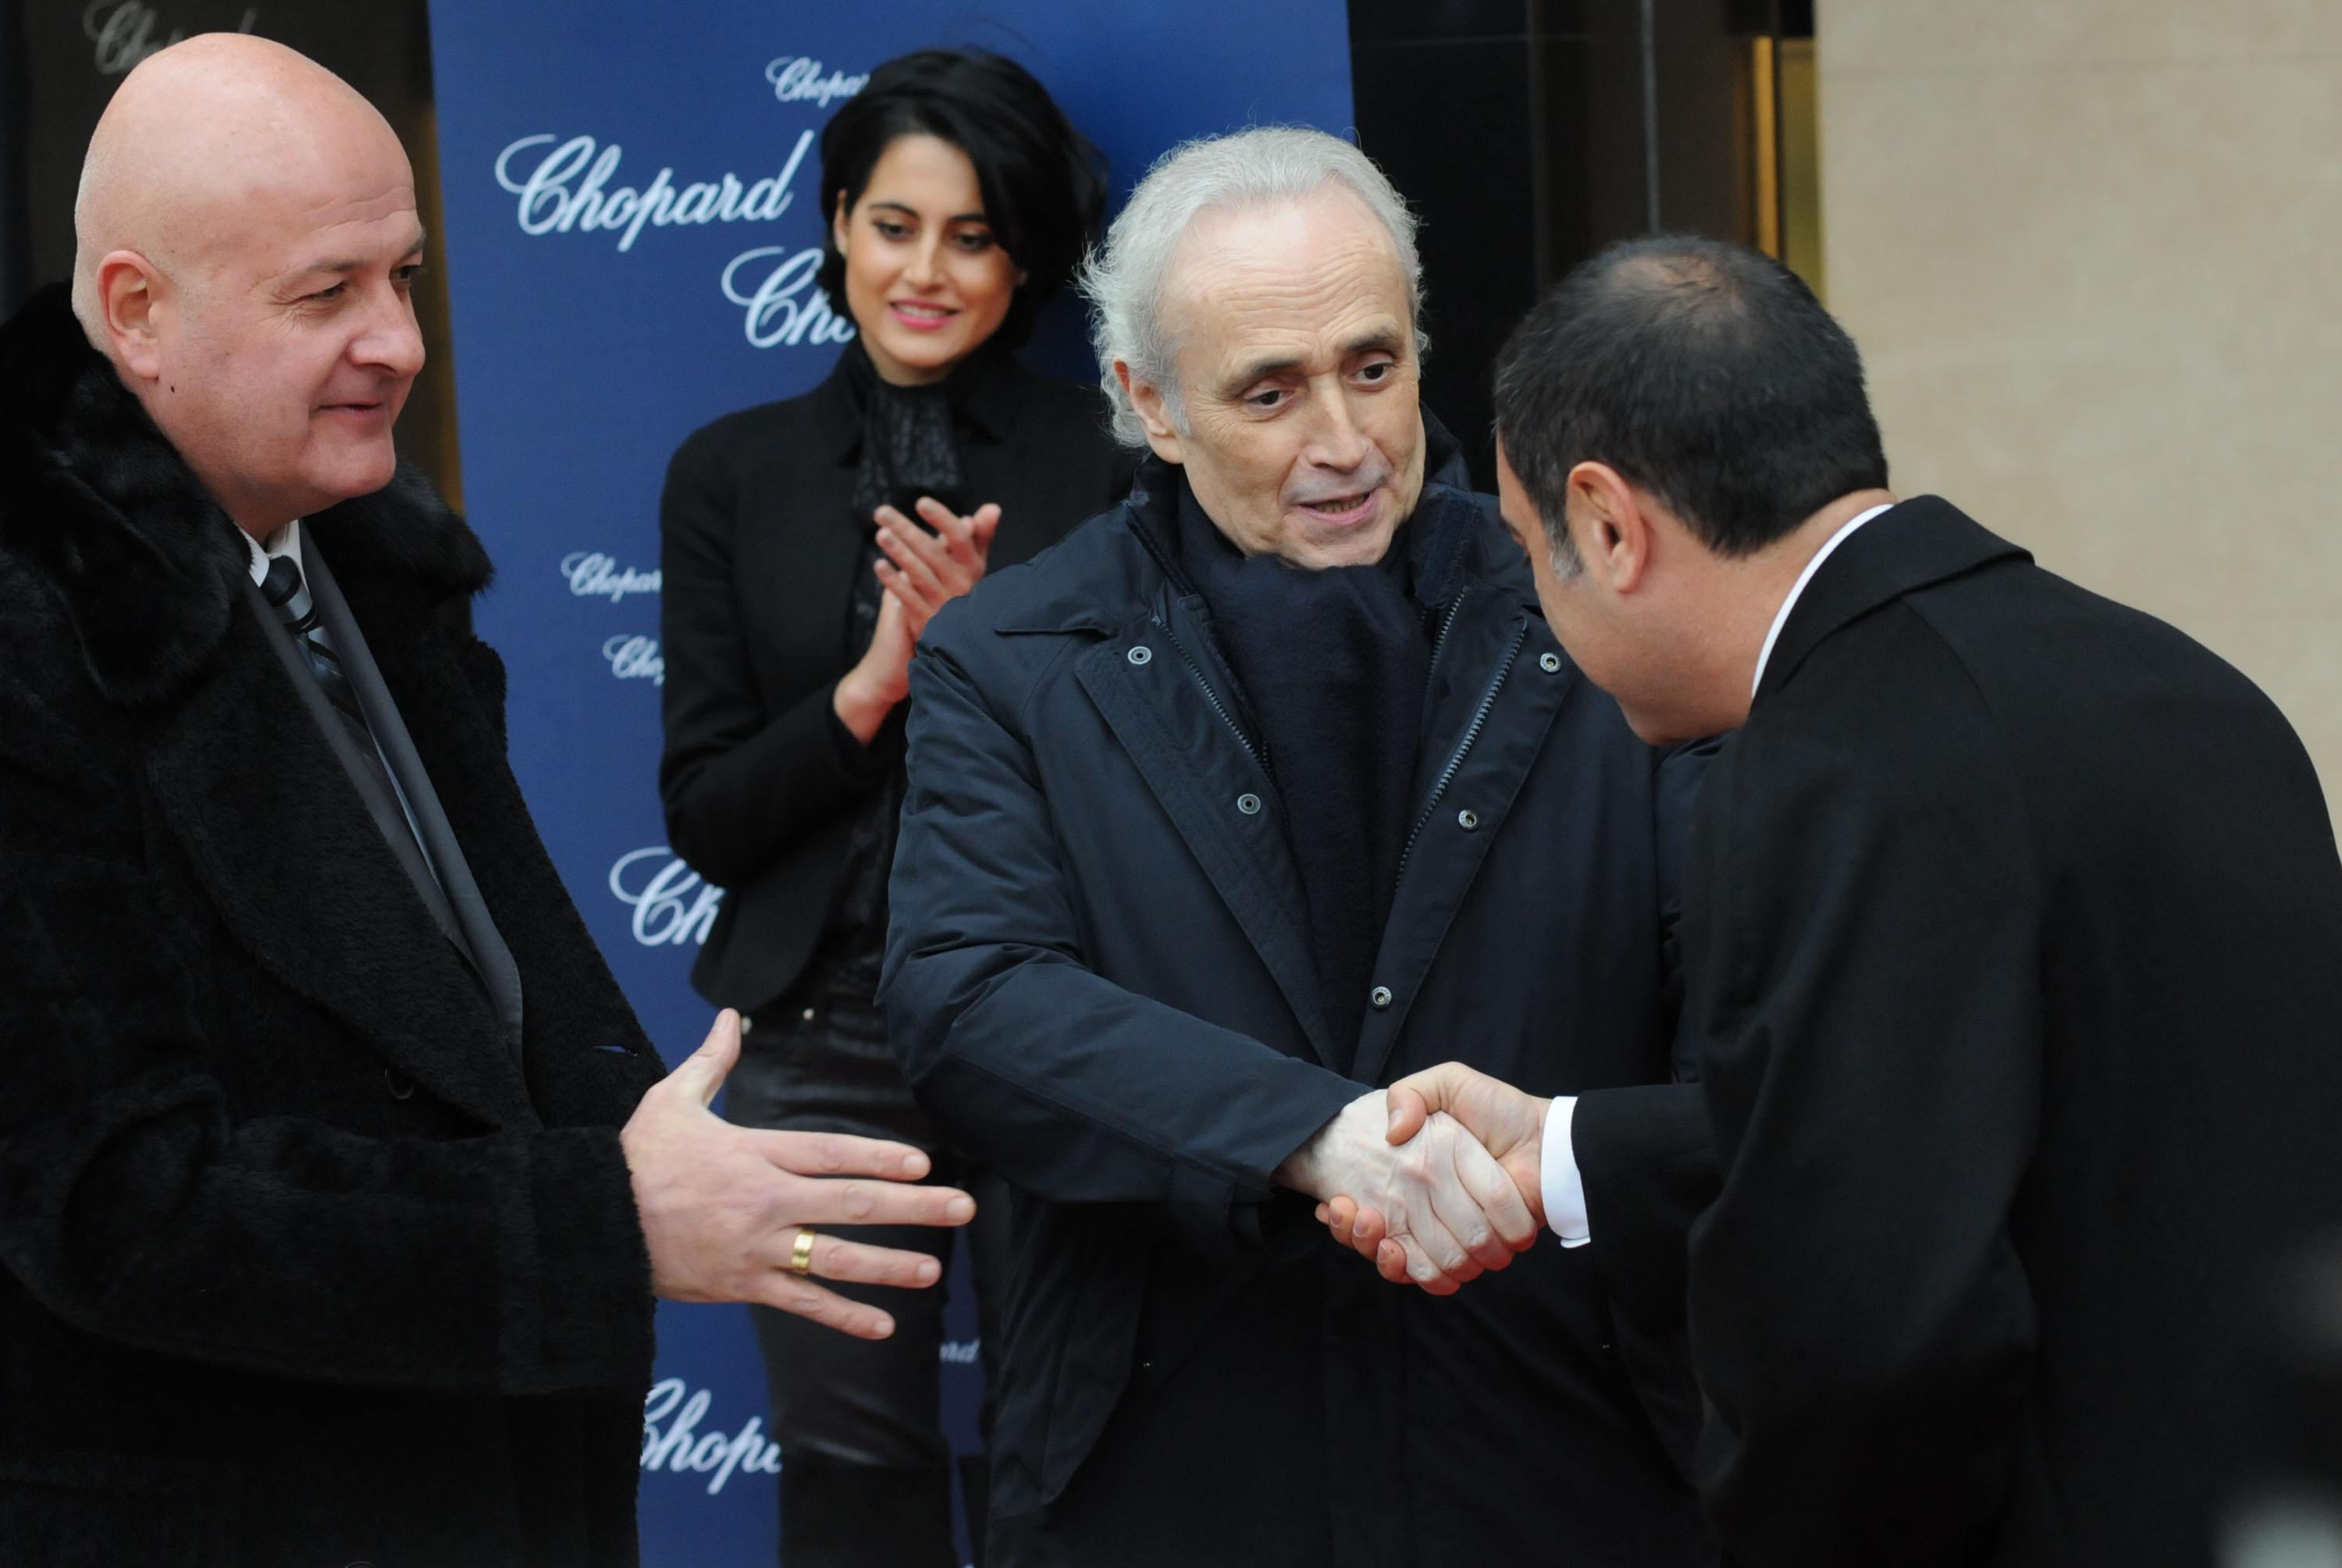 Хосе Карерас, заедно със Стефан Шарлопов и Ерик Тепеликян - съсобственици на бутик Chopard